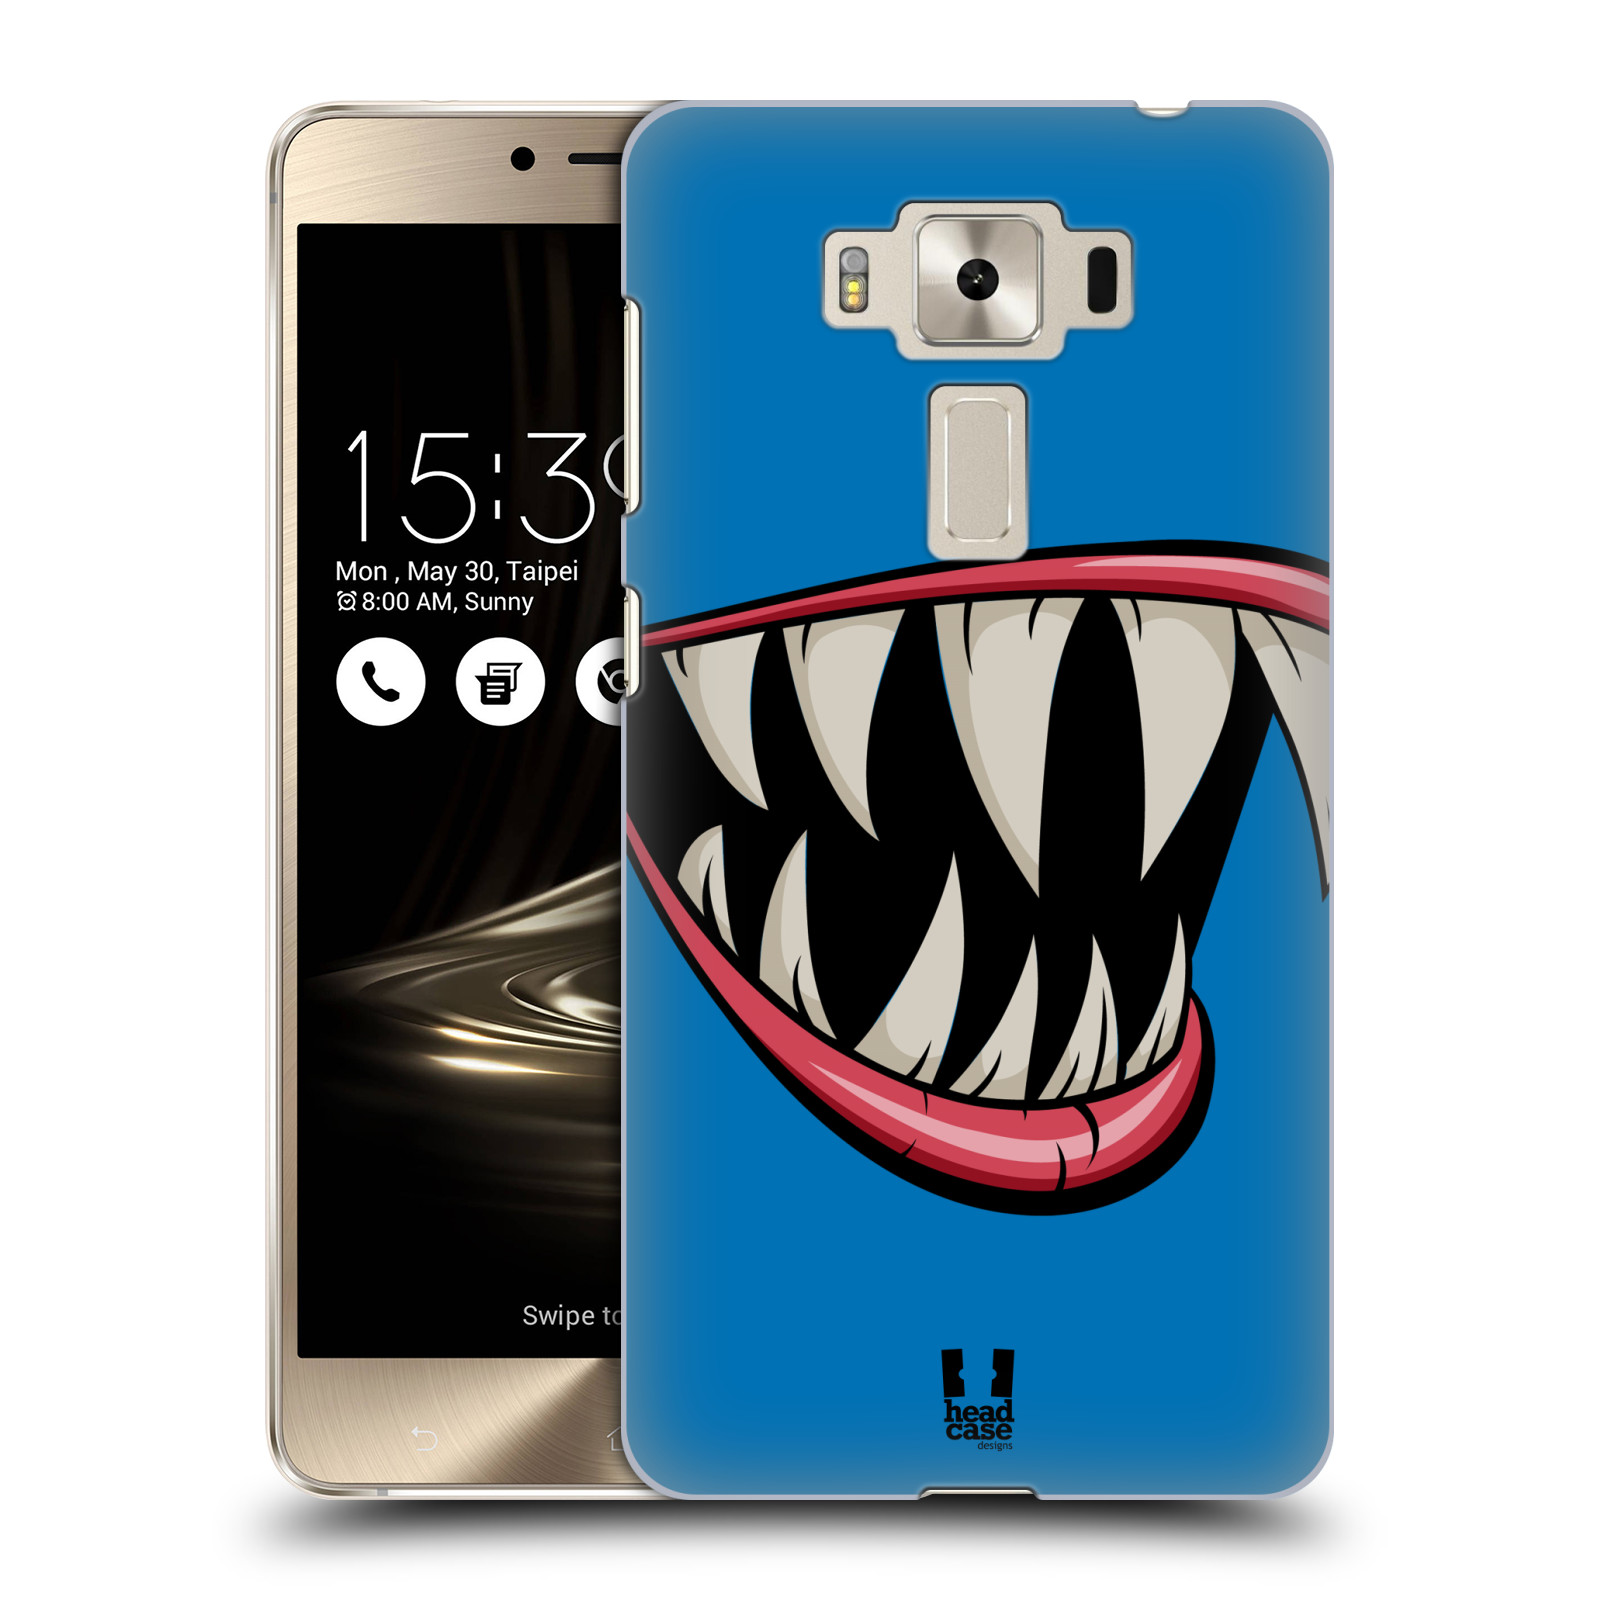 HEAD CASE plastový obal na mobil Asus Zenfone 3 DELUXE ZS550KL vzor Zvířecí úsměv ryba modrá